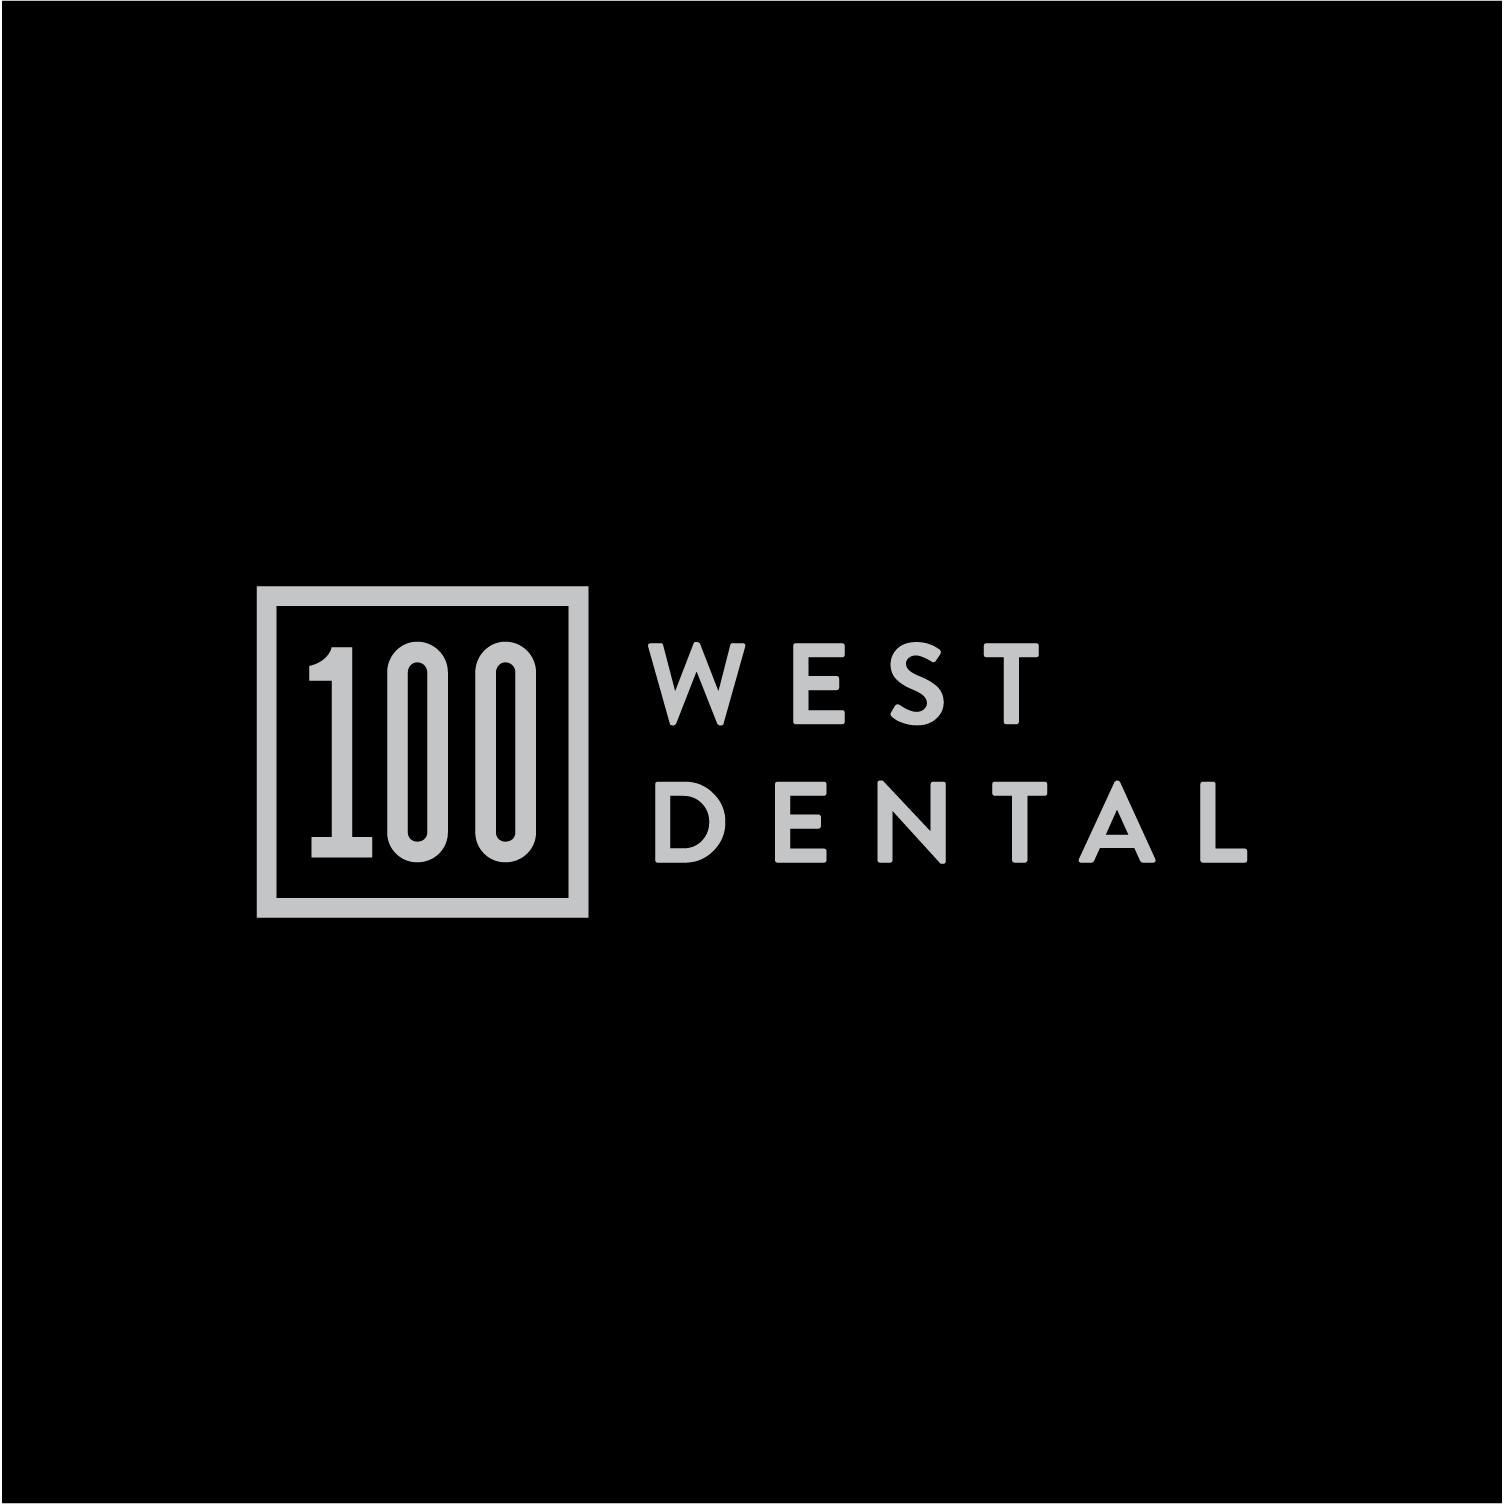 100 West Dental Ballwin (636)585-0100